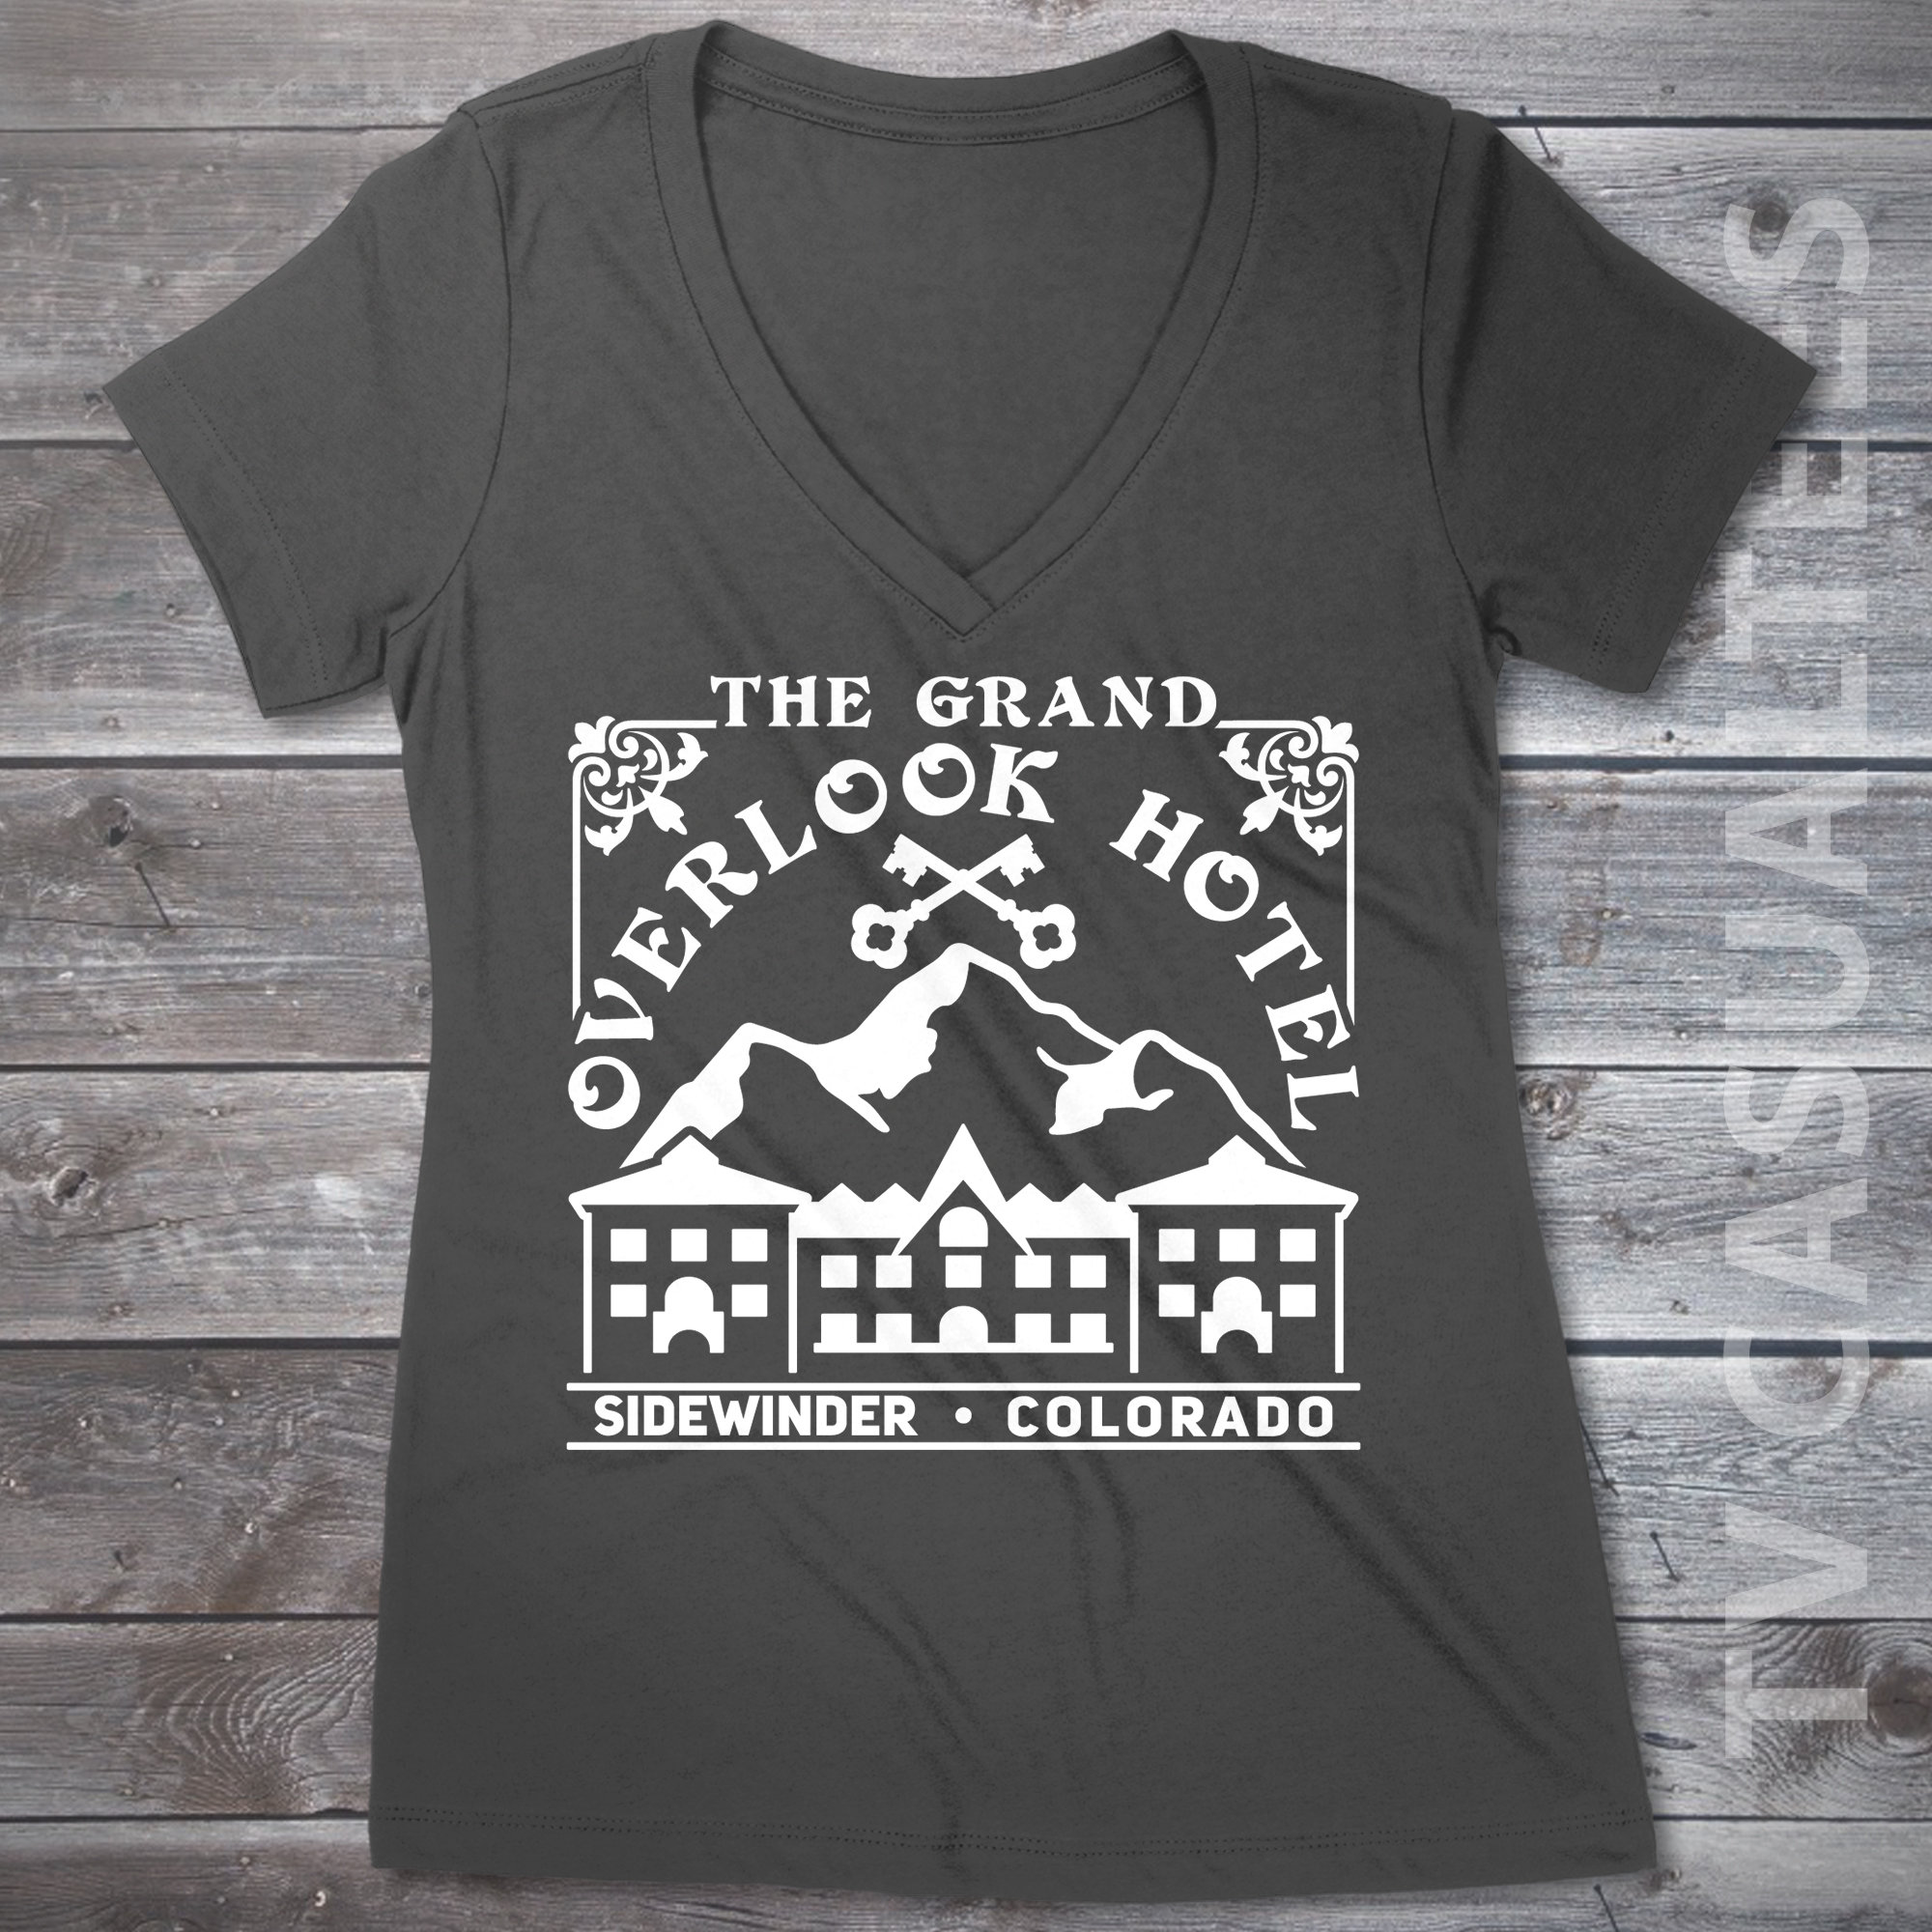 Vintage Colorado Rockies by © Buck Tee Originals - Colorado Rockies - T- Shirt